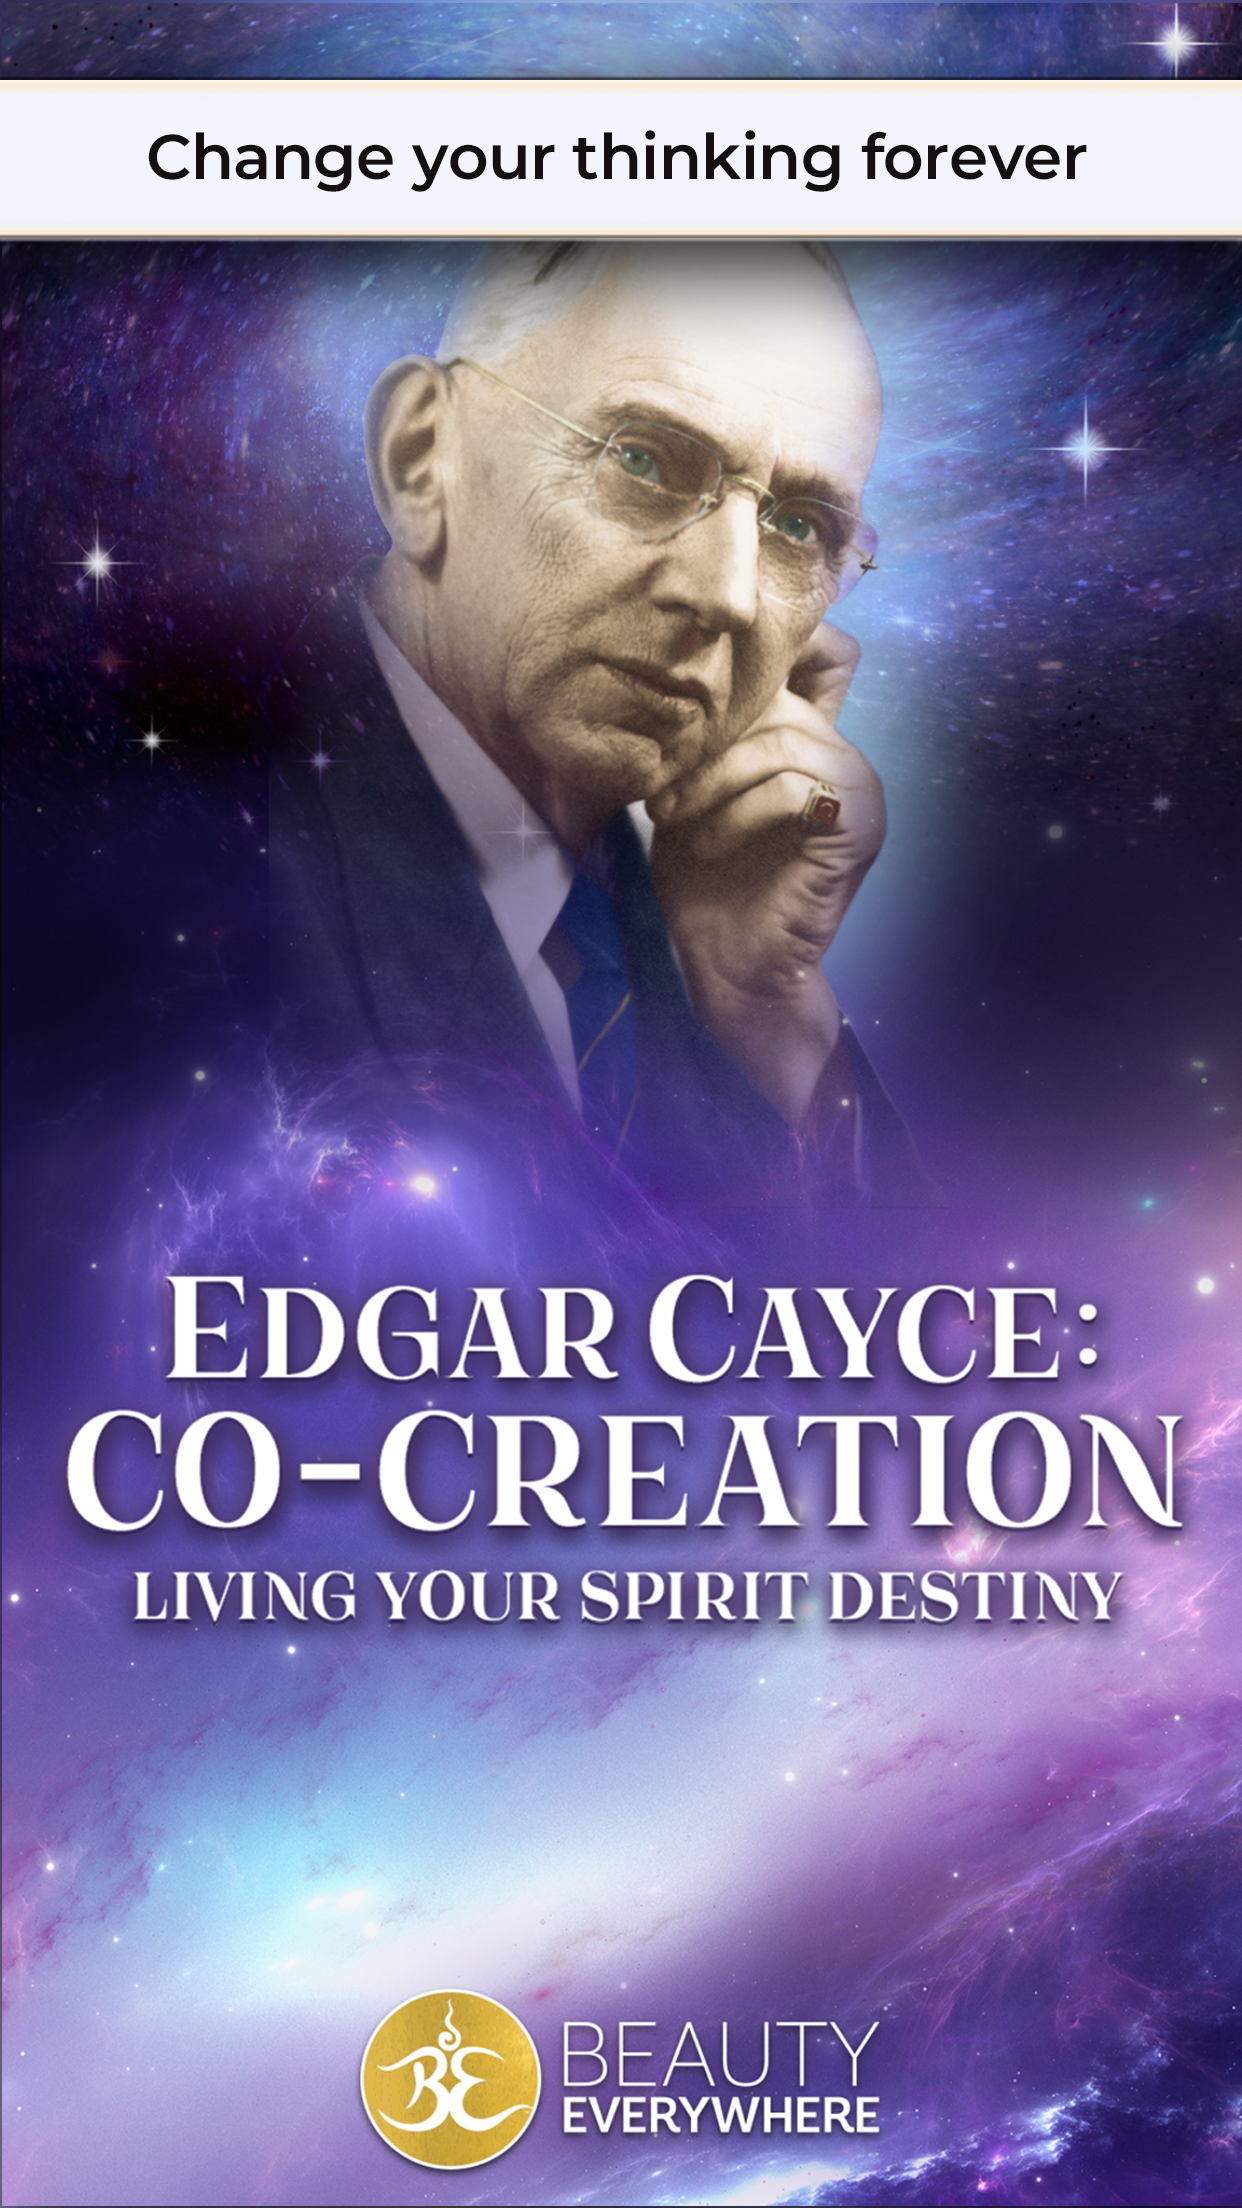 Edgar Cayce: Co-Creation by Beauty Everywhere